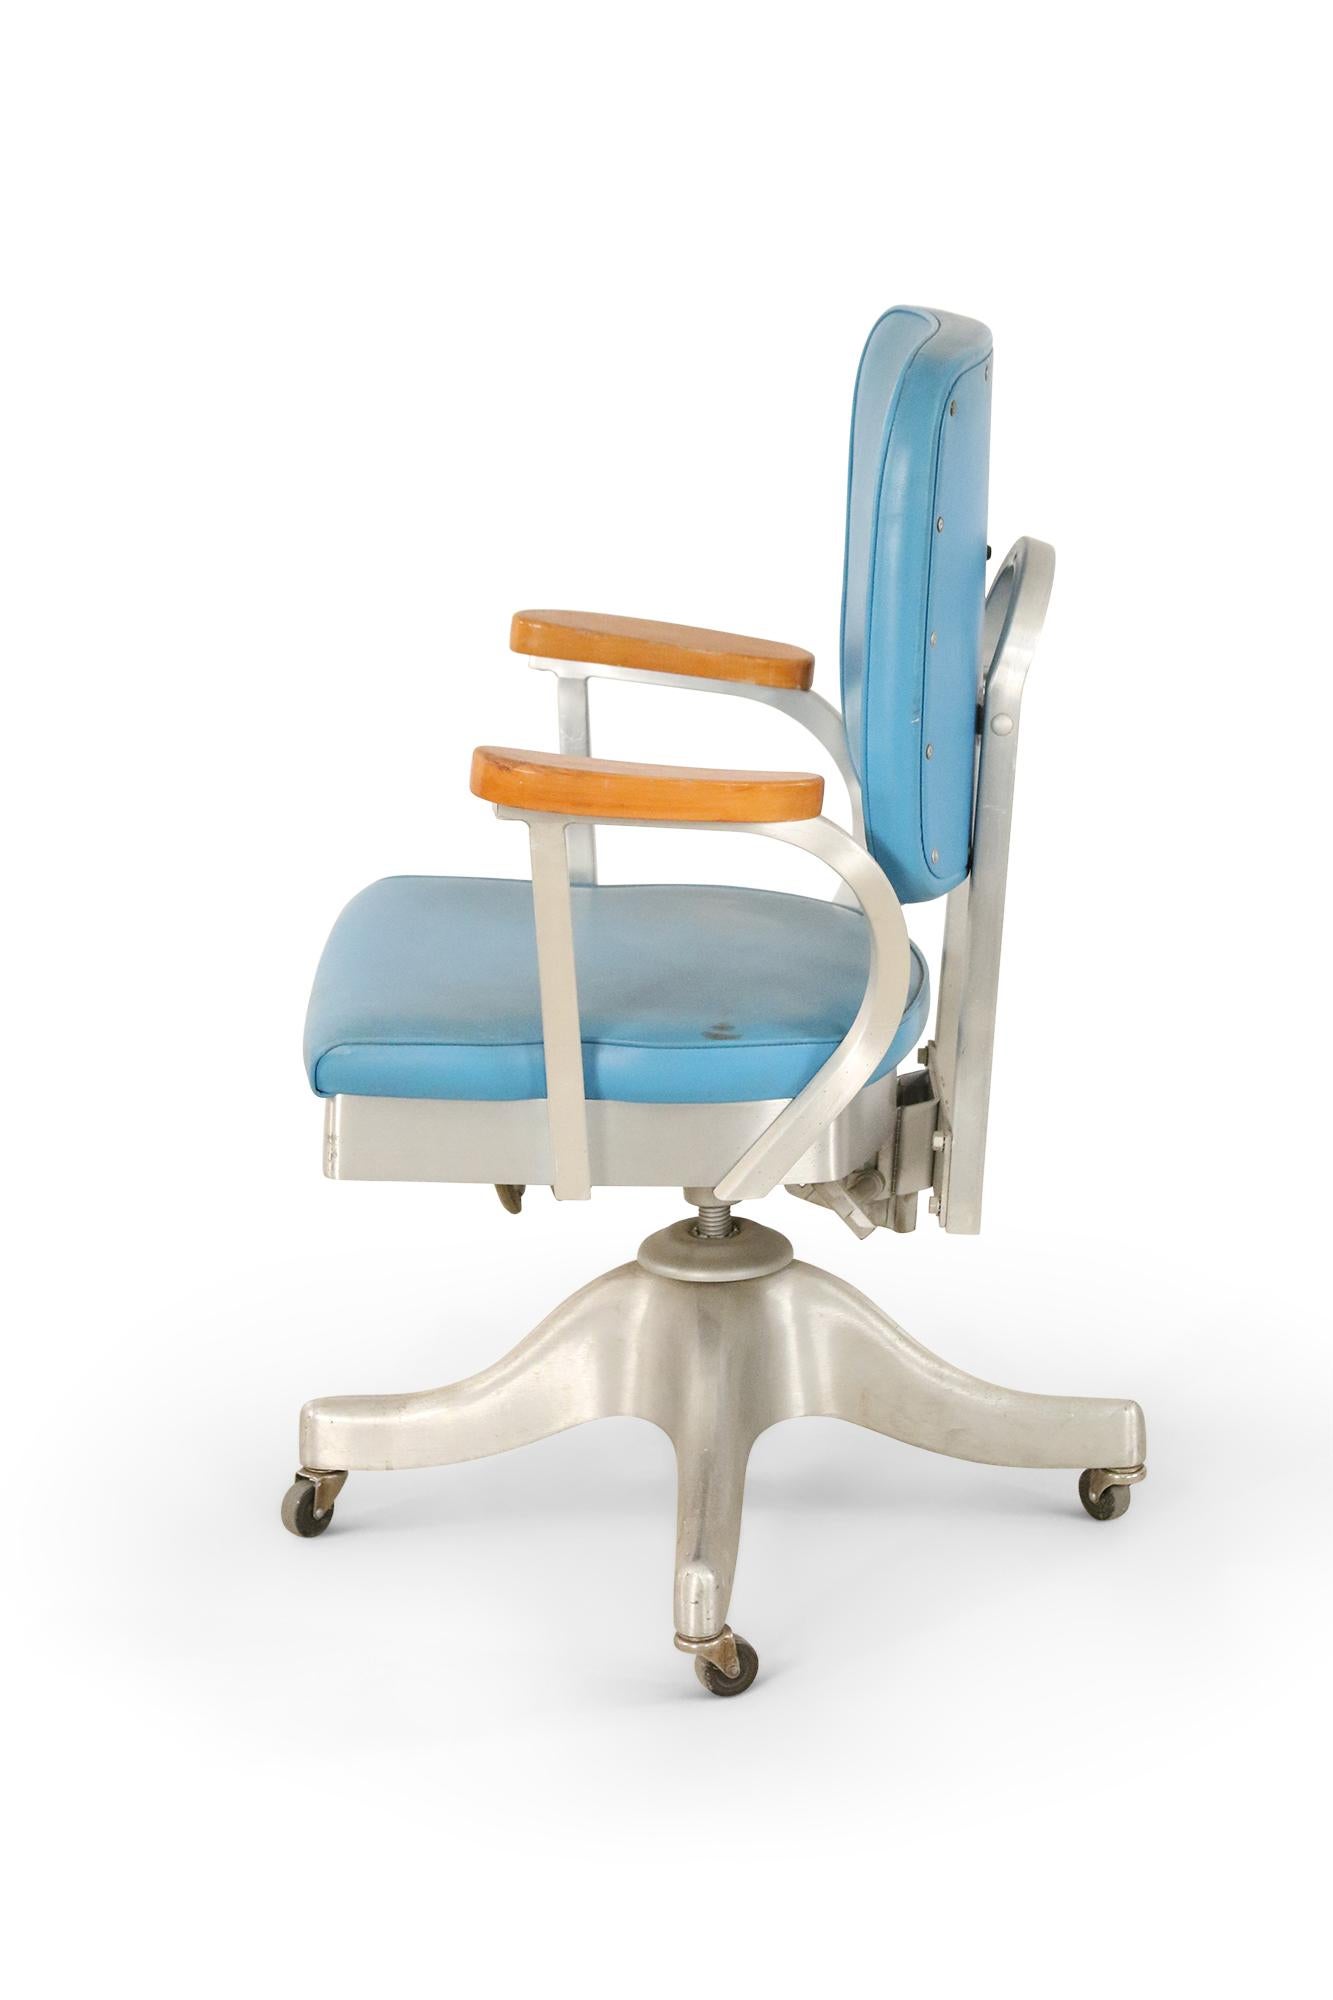 Chaise de bureau américaine du milieu du siècle, à roulettes et réglable, avec revêtement en vinyle bleu, cadre en métal argenté à quatre roues et accoudoirs en bois. (Shaw Walker Co.).
   